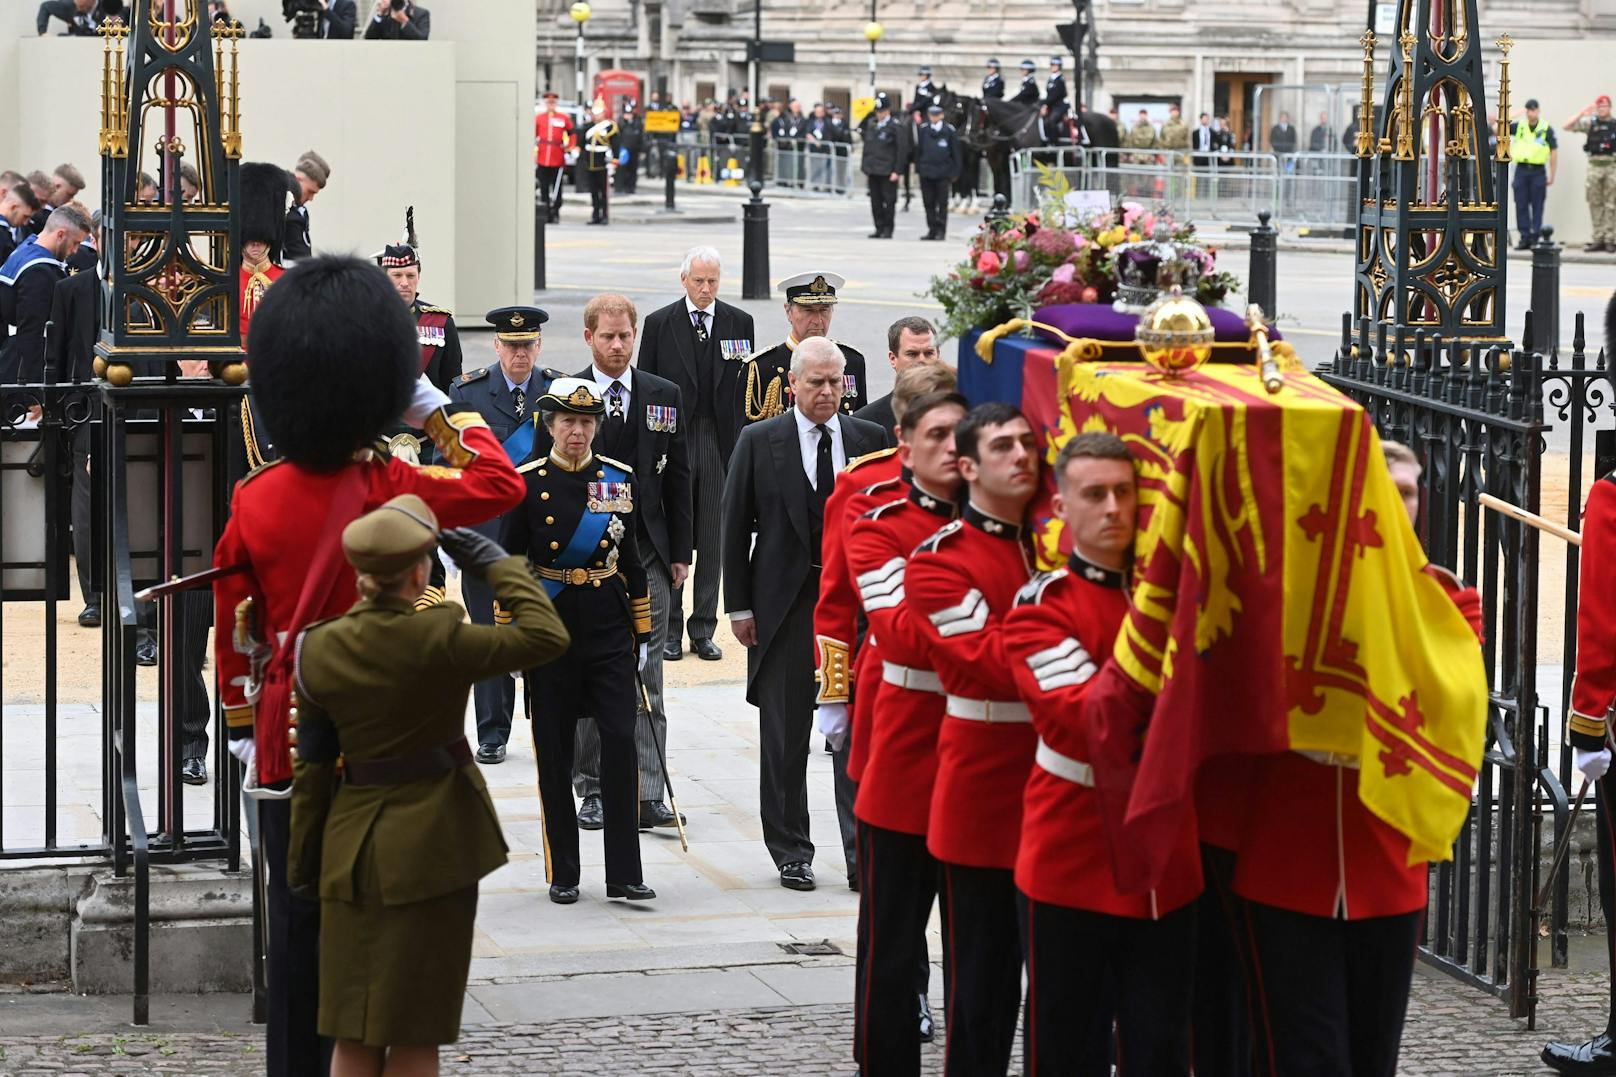 Bilder vom Begräbnis der Queen: Jetzt starb einer ihrer Sargbegleiter.